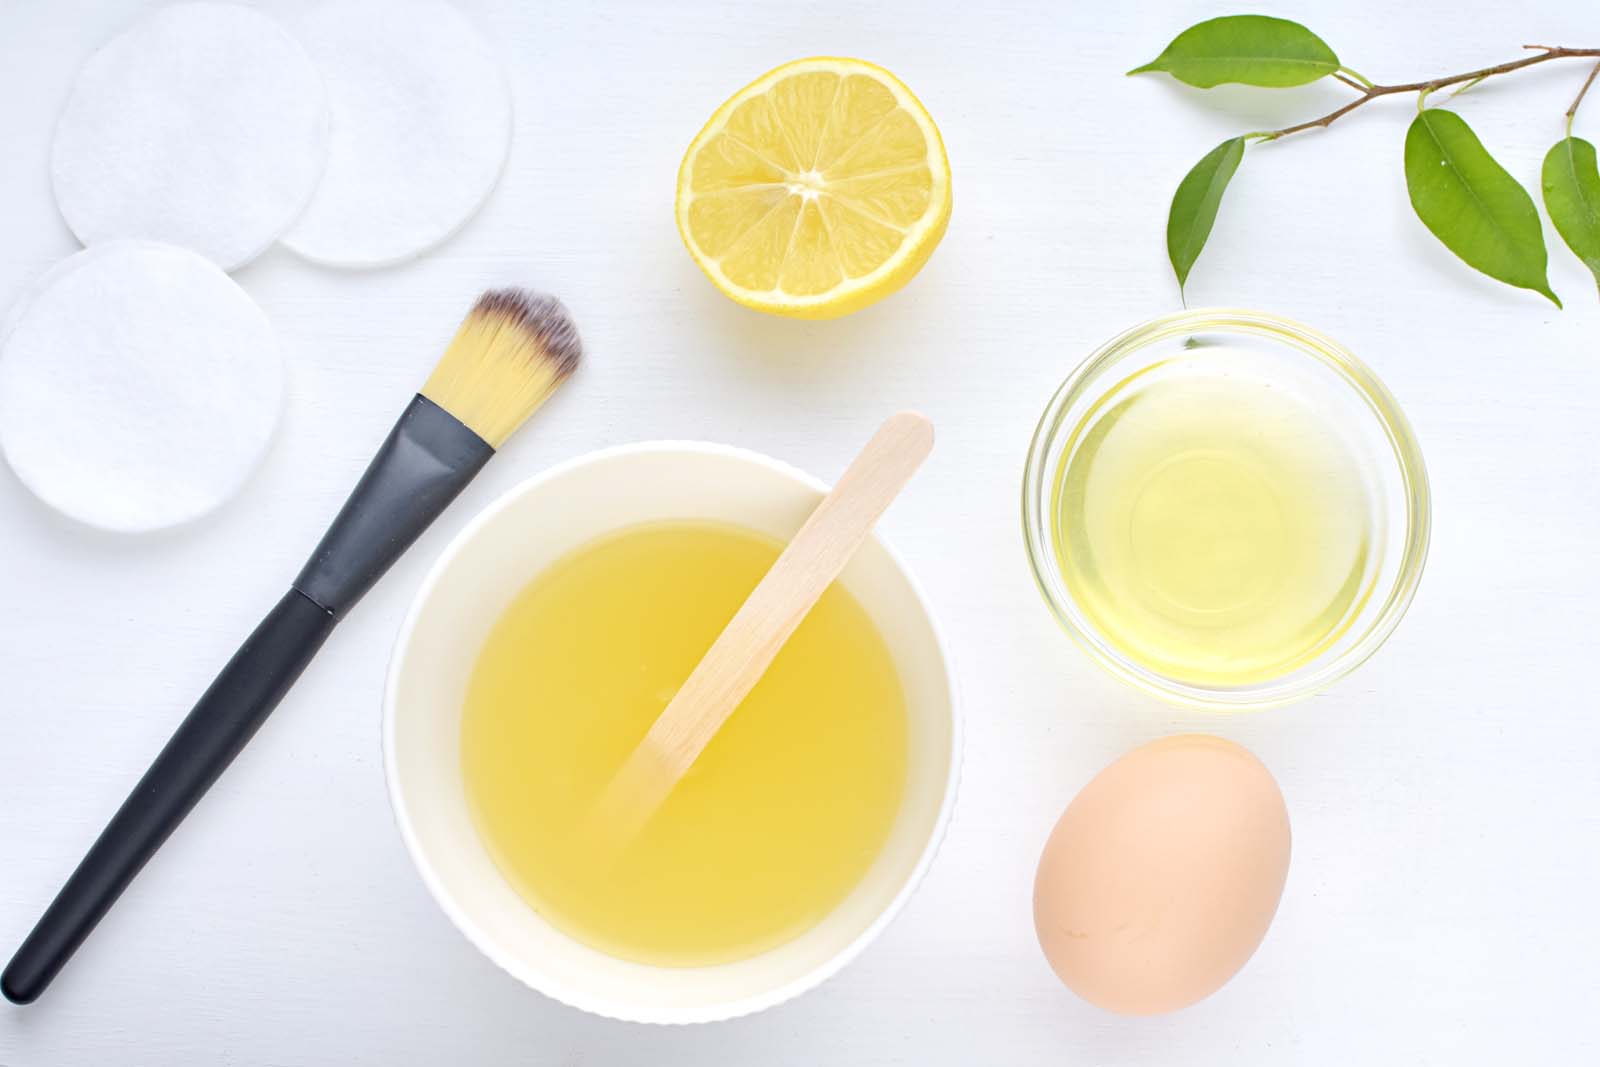 Ingredientes para preparar mascarillas caseras para pelo graso: limón, huevo y miel